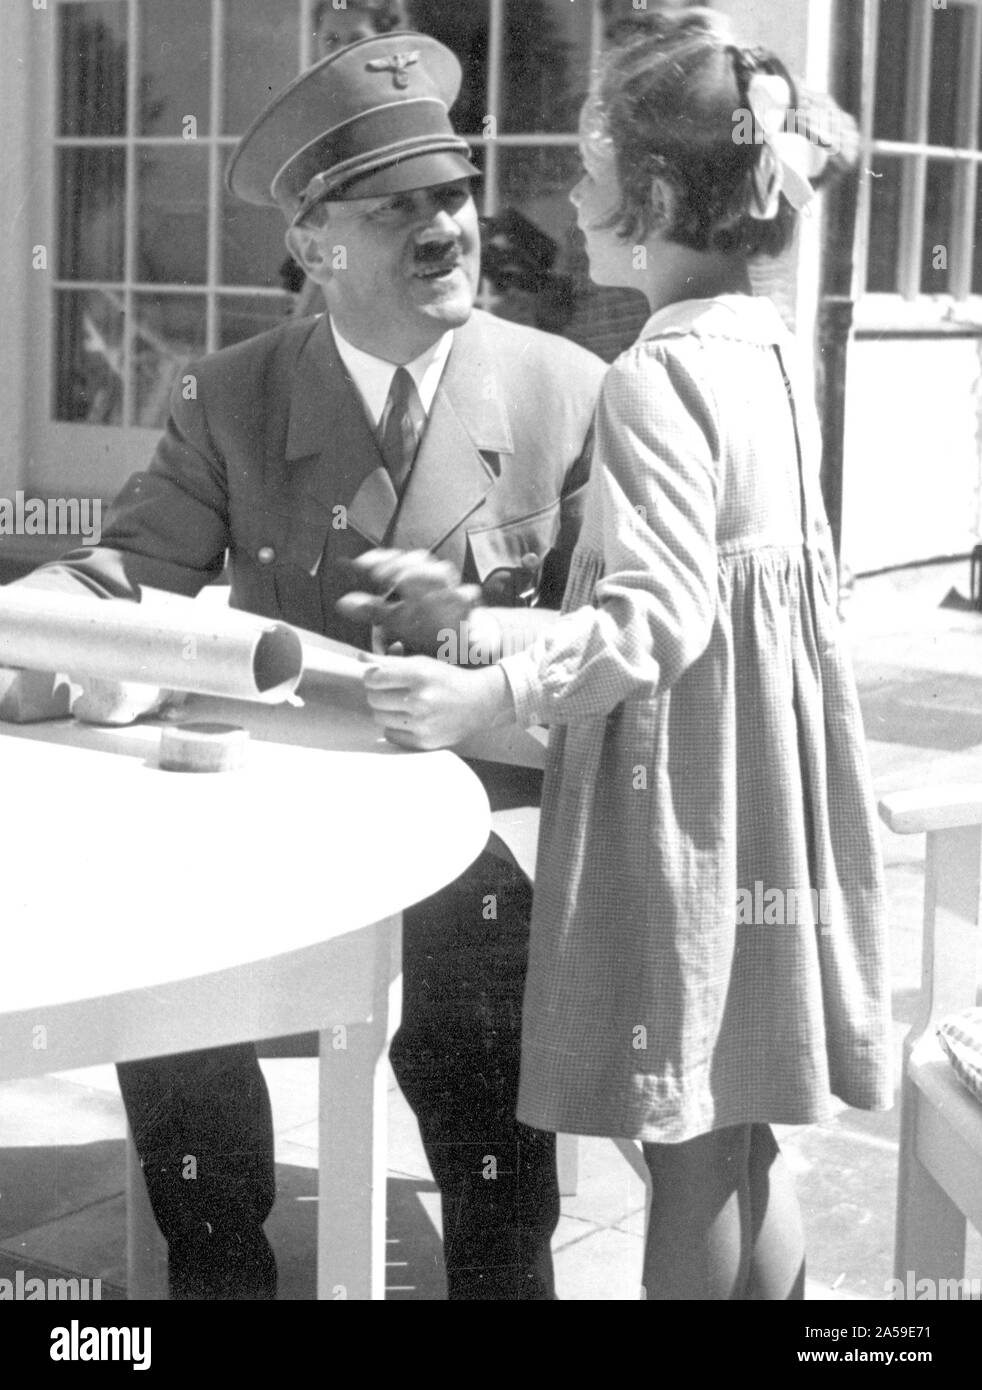 Eva Braun Sammlung (dvadvadaset) - Adolf Hitler mit jungen Mädchen Ca. 1930s Stockfoto